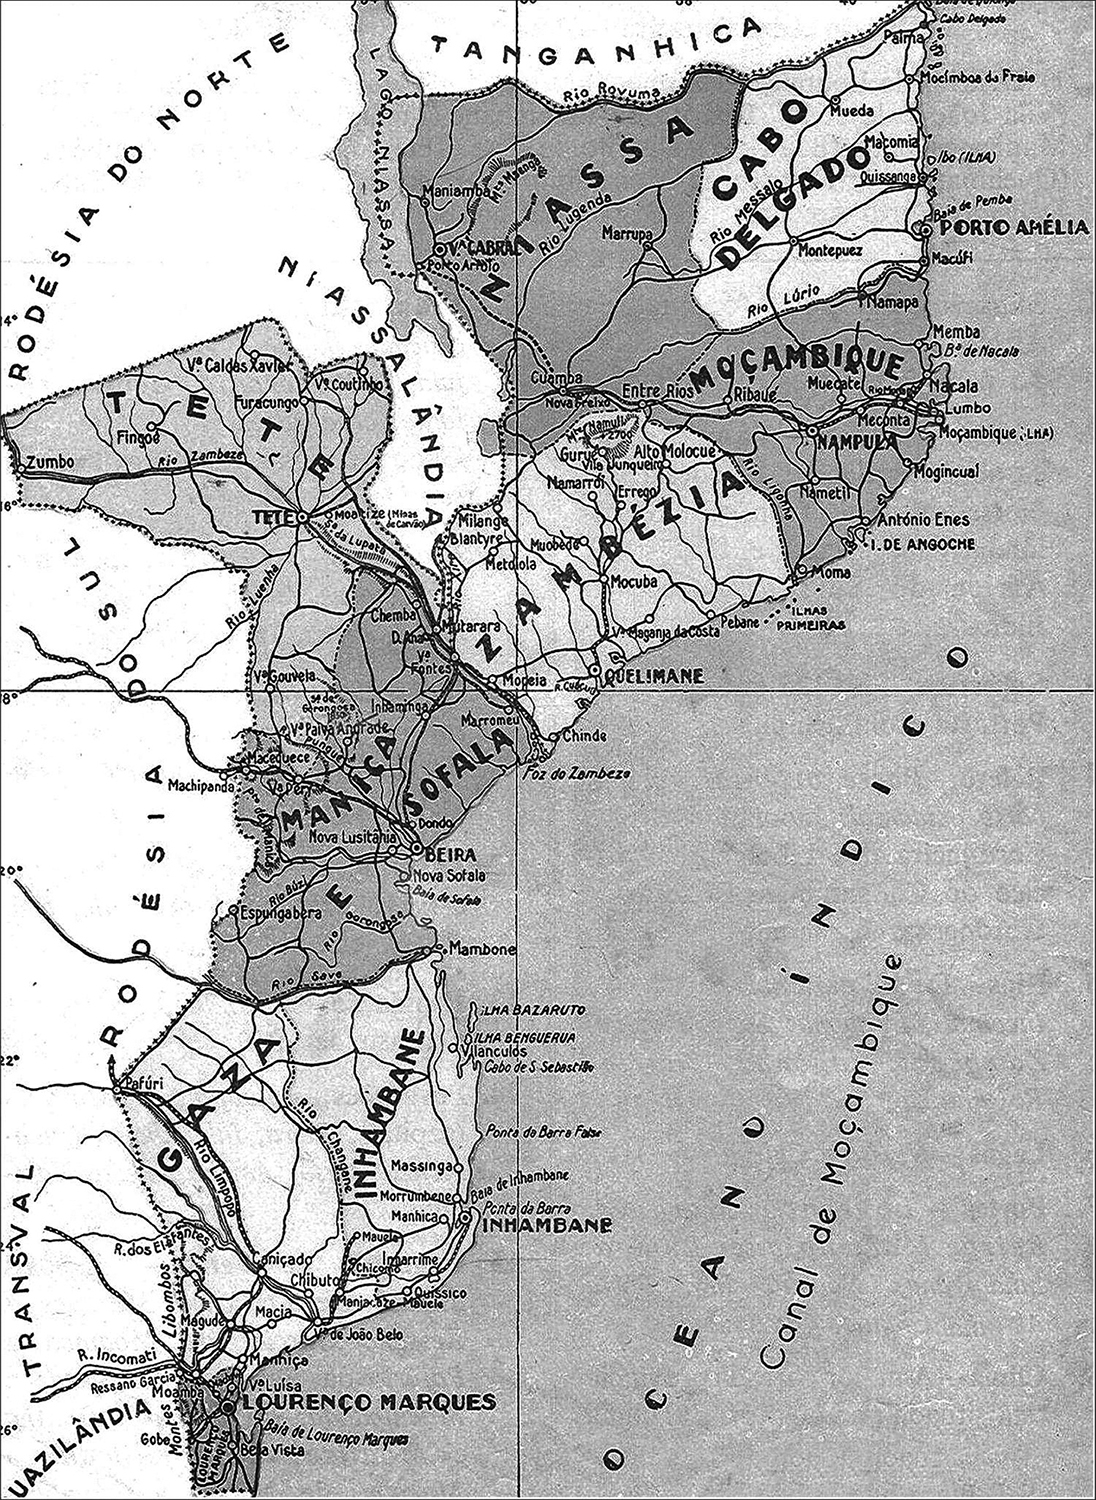 Mappa del Mozambico durante il periodo coloniale. Fonte: http://dx.doi.org/10.1590/S0104-59702014000200006